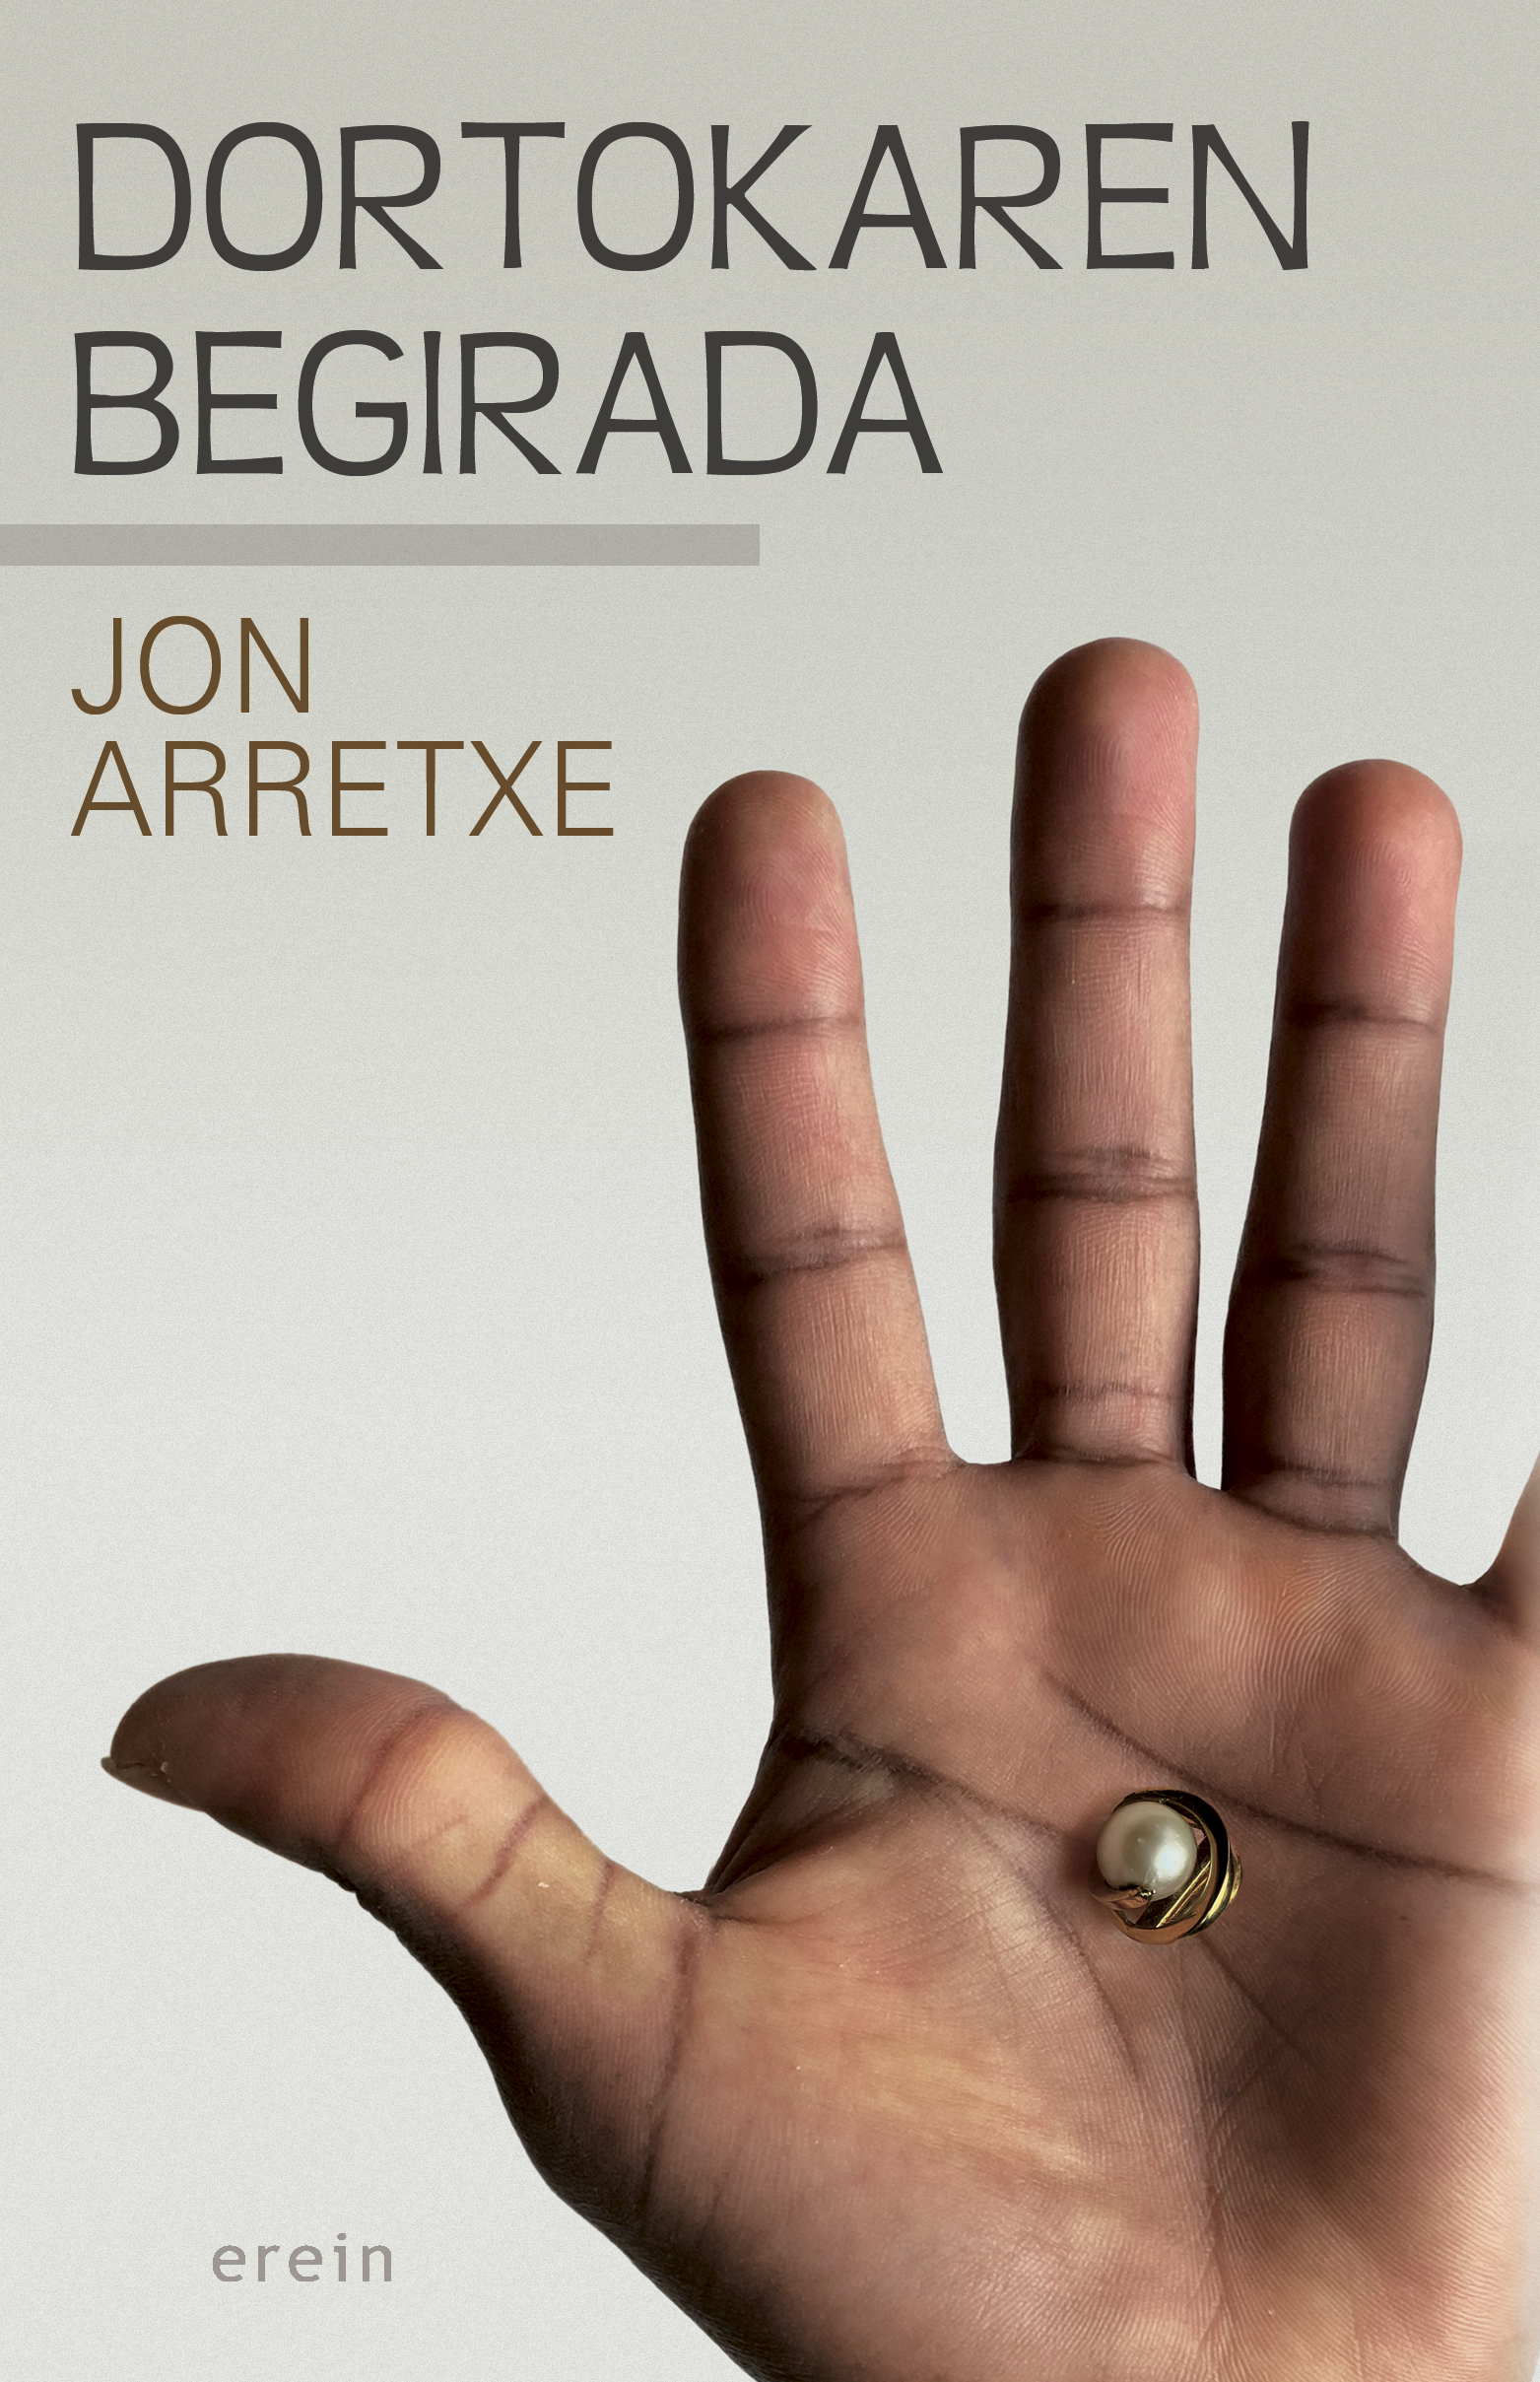 Jon Arretxe's THE TOURÉ’S SAGA Book 8 Dortokaren Begirada book cover